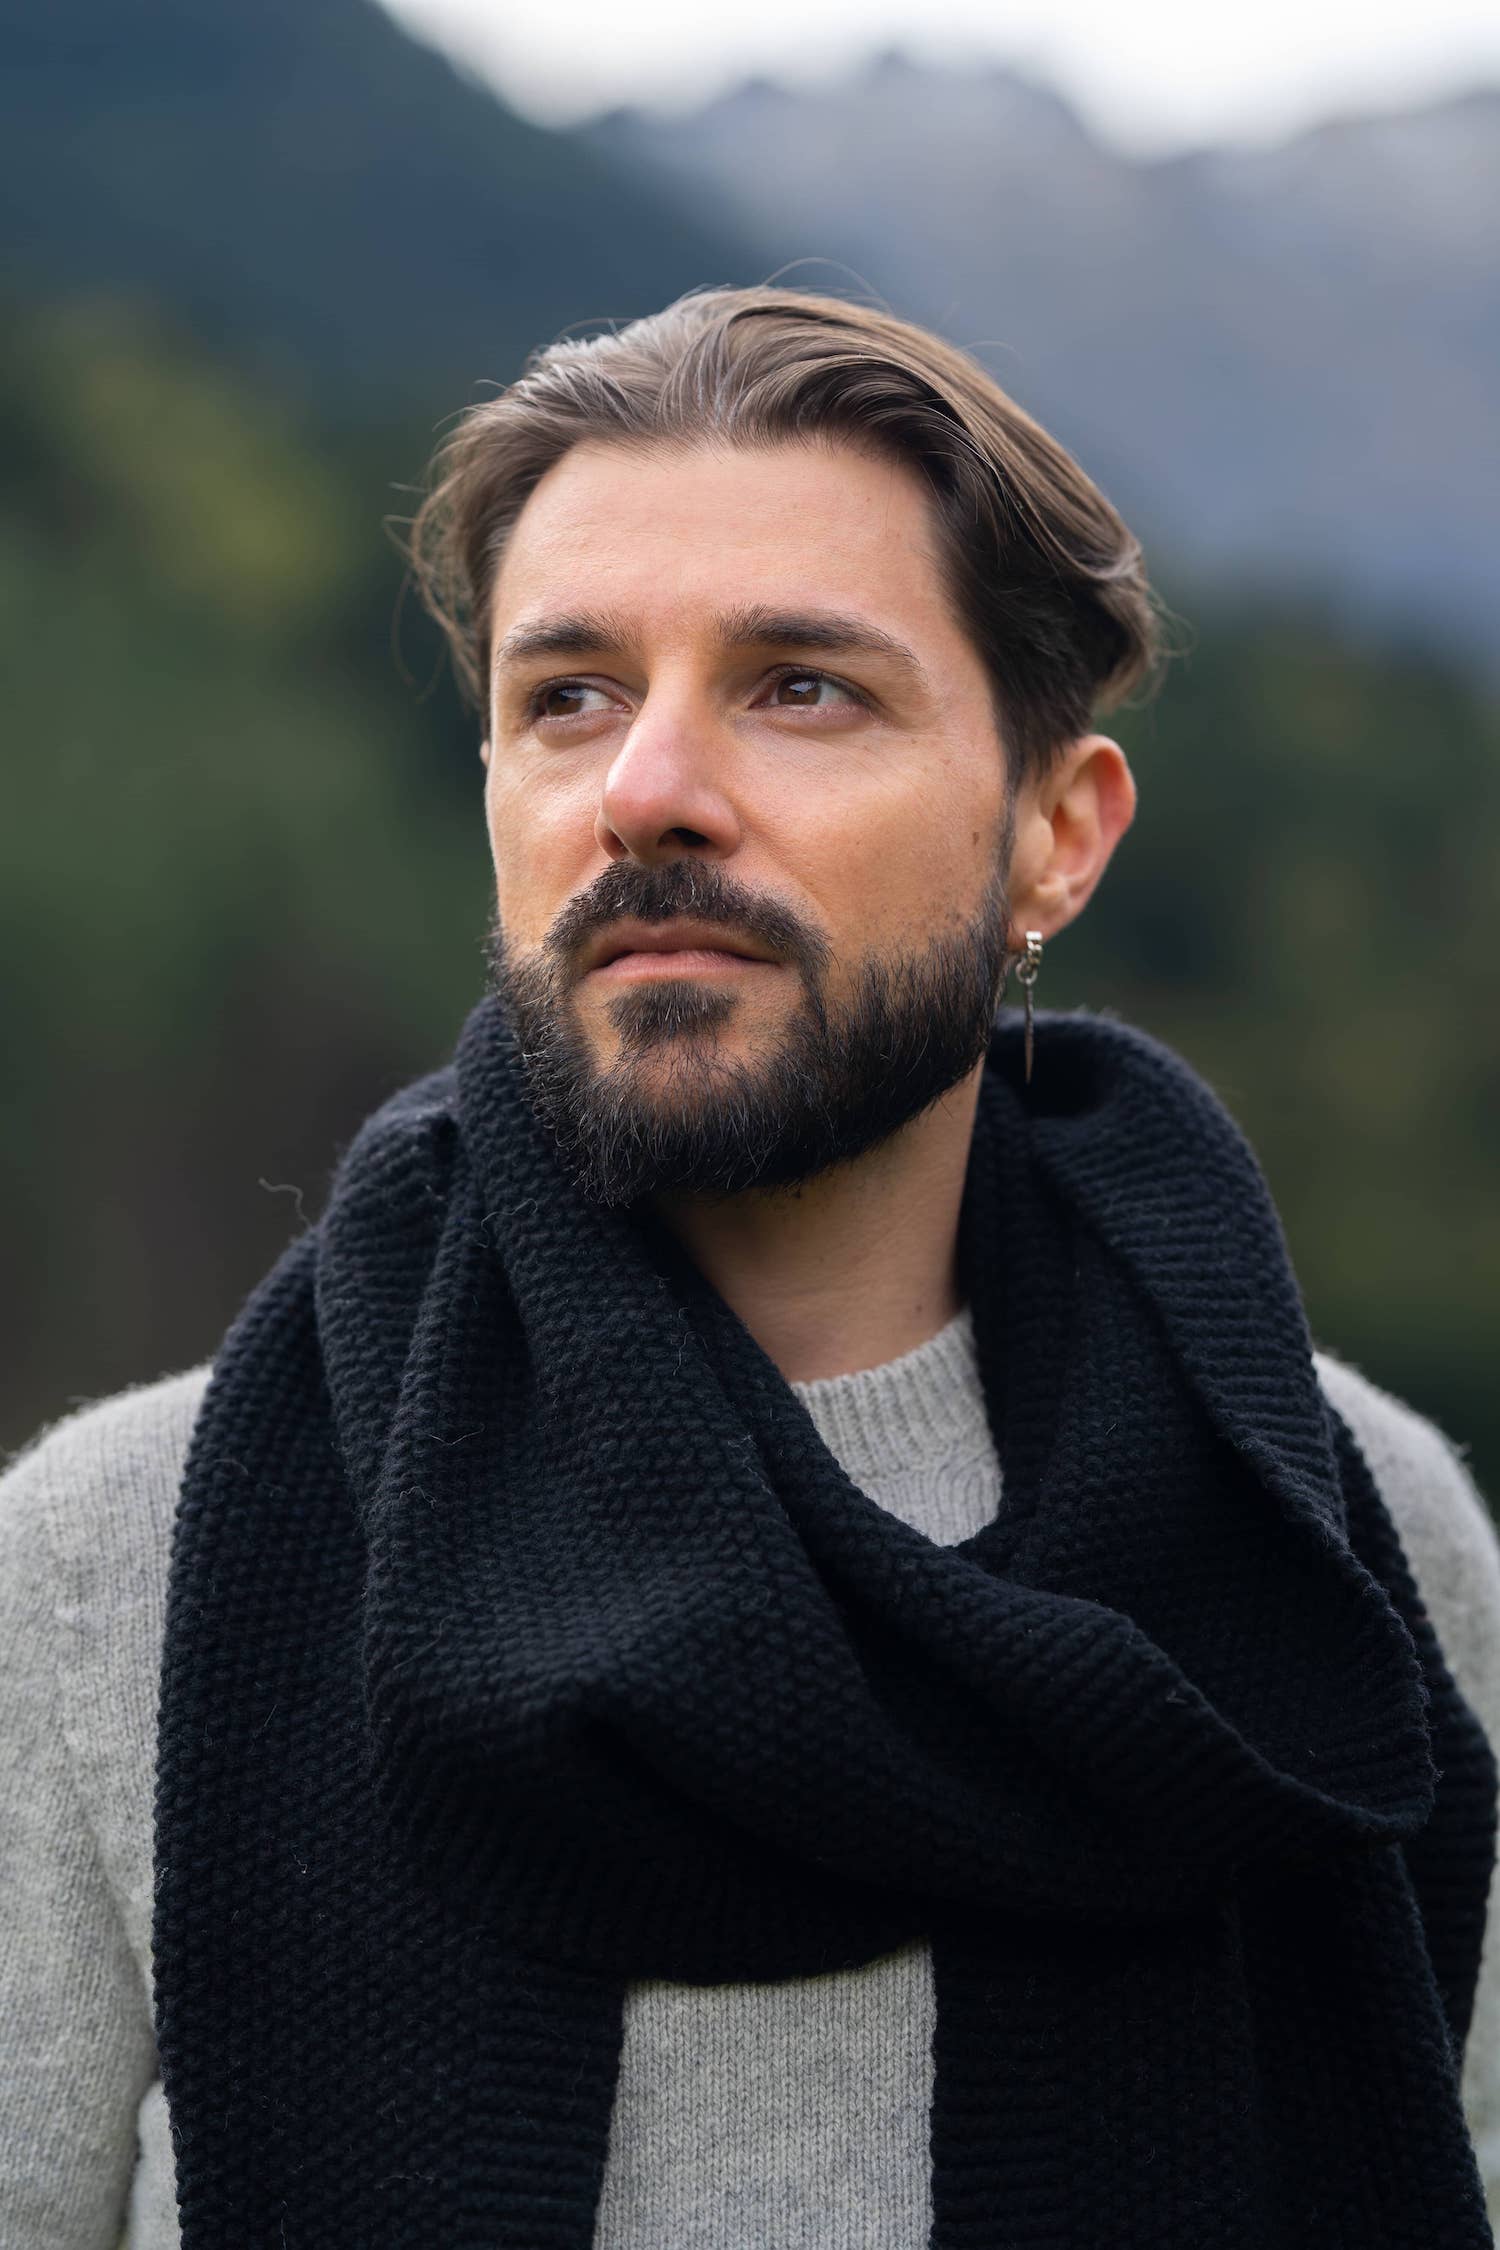 écharpe homme éthique et responsable, noir, en laine des Pyrénées et coton recyclé, made in France, maison izard